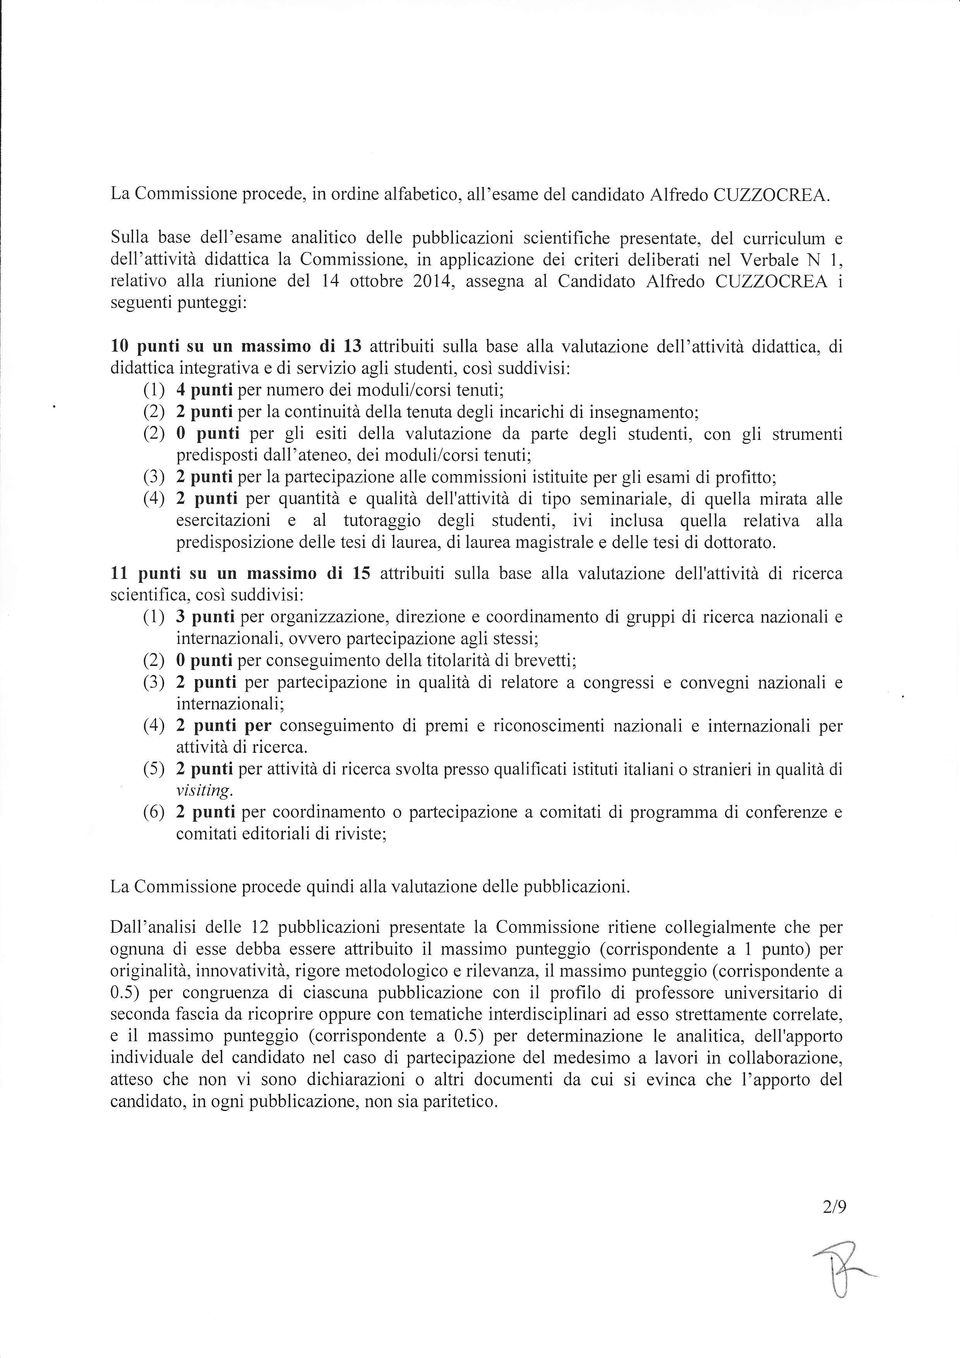 alla riunione del 14 ottobre 2014, assegna al Candidato Alfredo CIJZZOCREA i seguenti punteggi: 10 punti su un massimo di 13 attribuiti sulla base alla valutazione dell'attività didattica, di